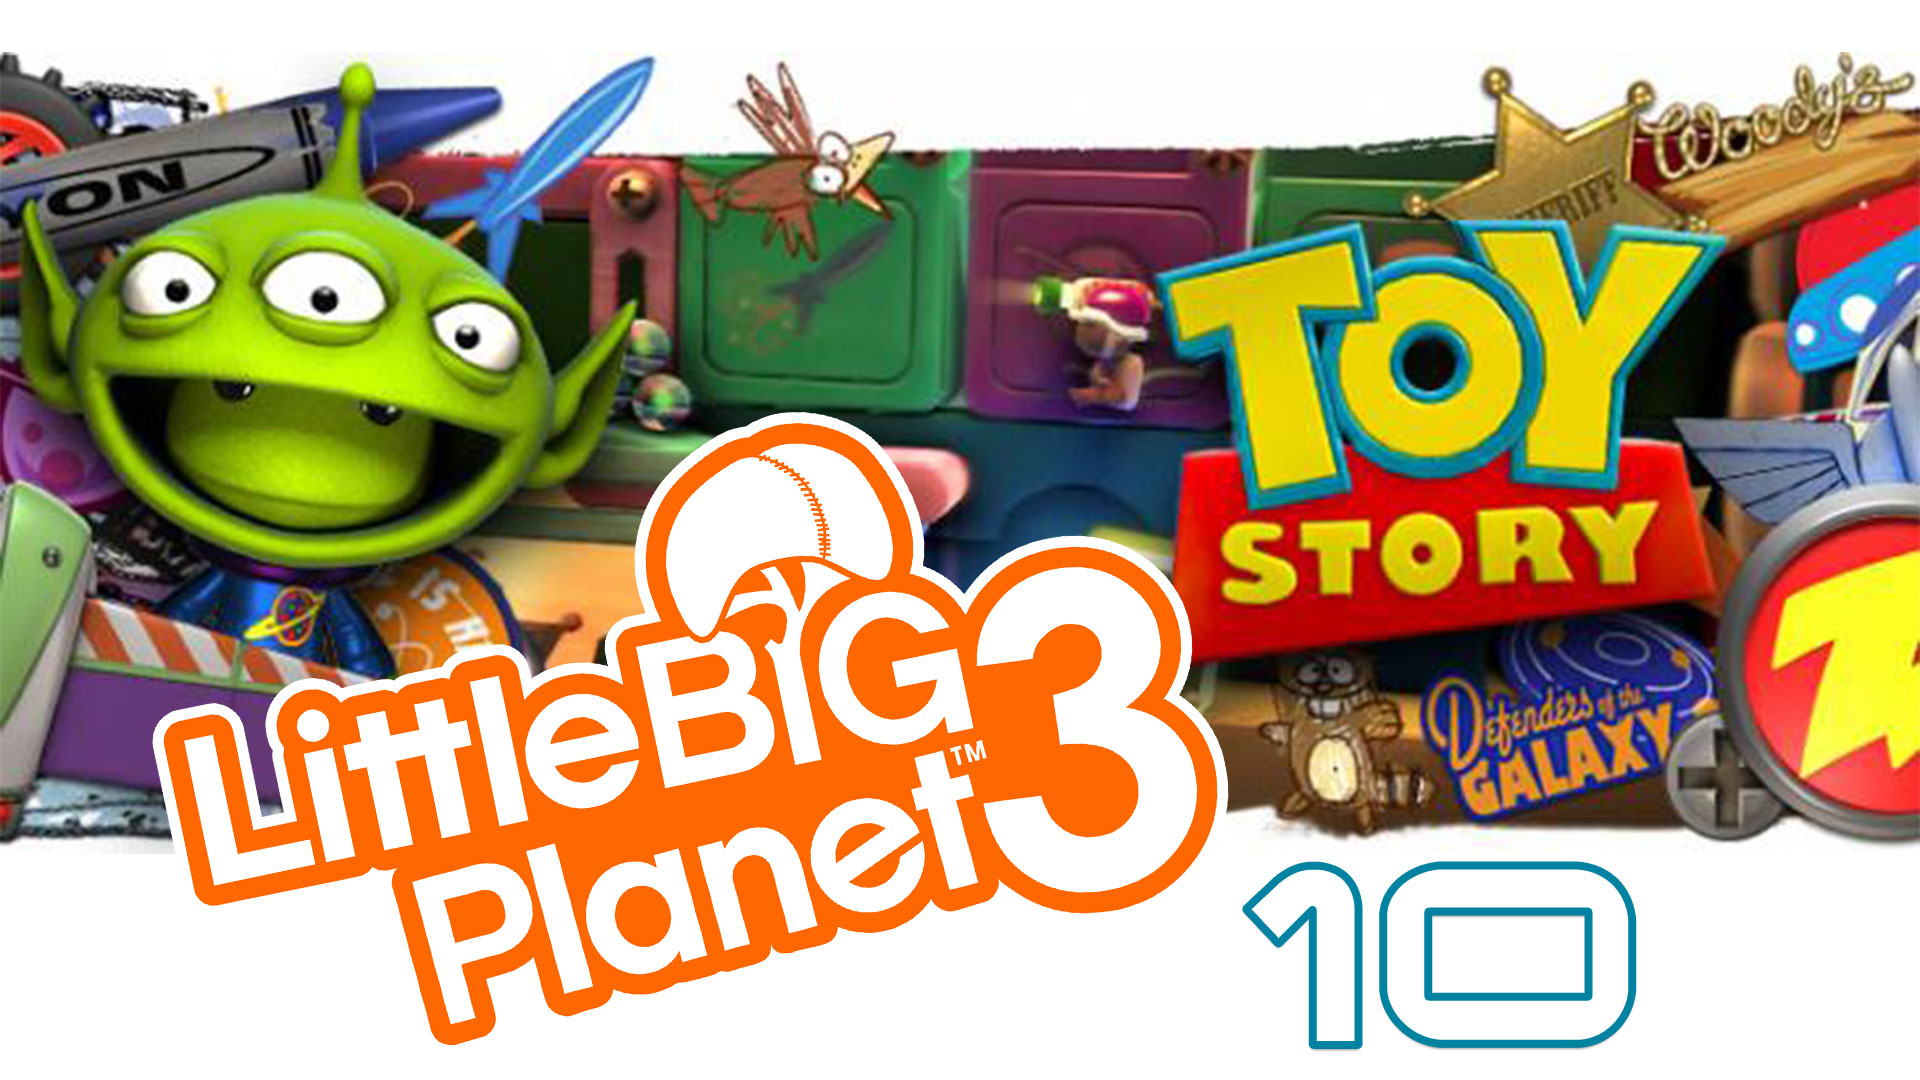 LittleBigPlanet 3 - Сезон 2 - Кооператив - История игрушек ч. 1 - Прохождение [#10] | PS4 (2016 г.)